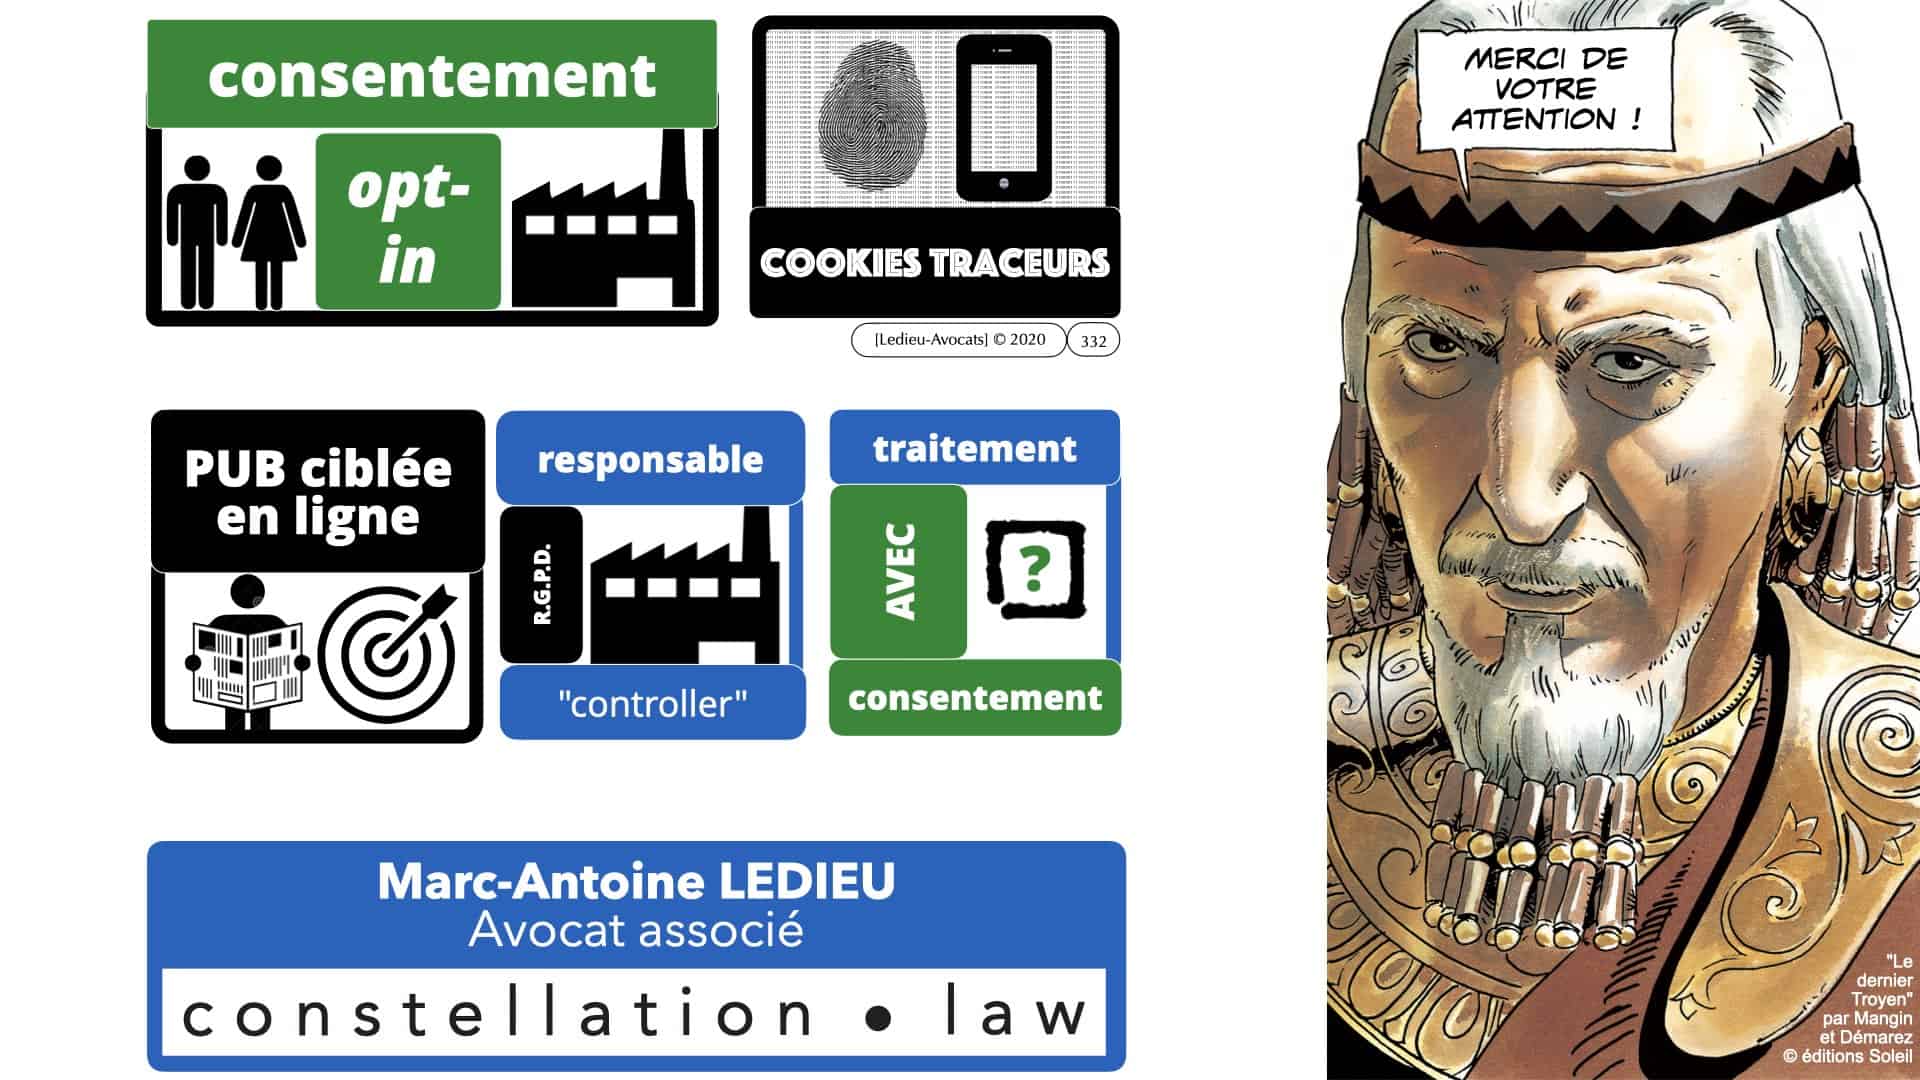 RGPD e-Privacy données personnelles jurisprudence formation Lamy Les Echos 10-02-2021 ©Ledieu-Avocats.332